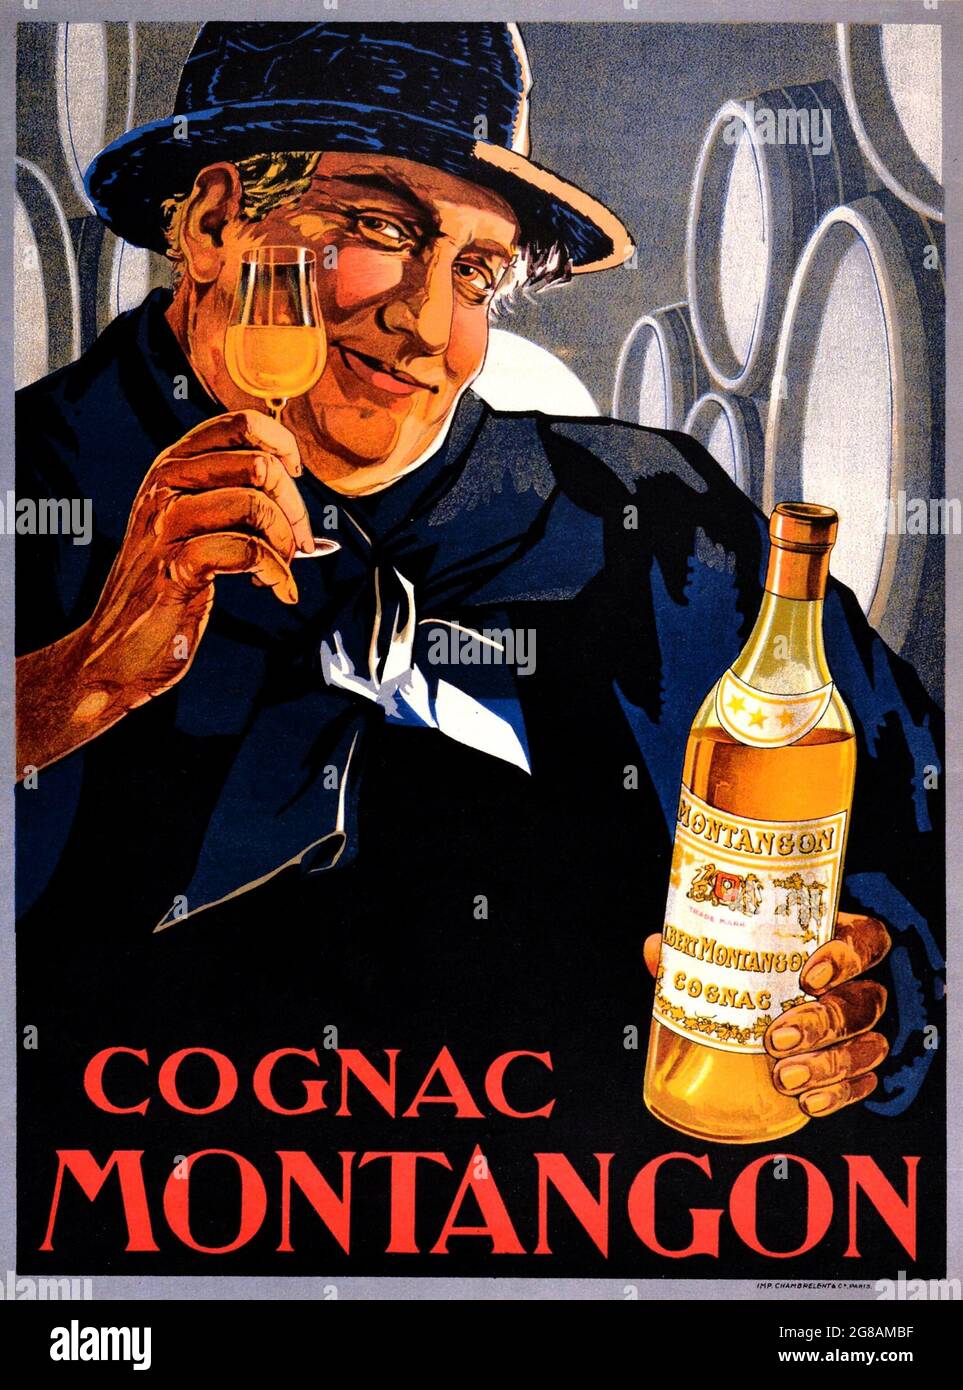 Affiche ancienne – Cognac Montangon – boisson alcoolisée française Publicité Art. Banque D'Images